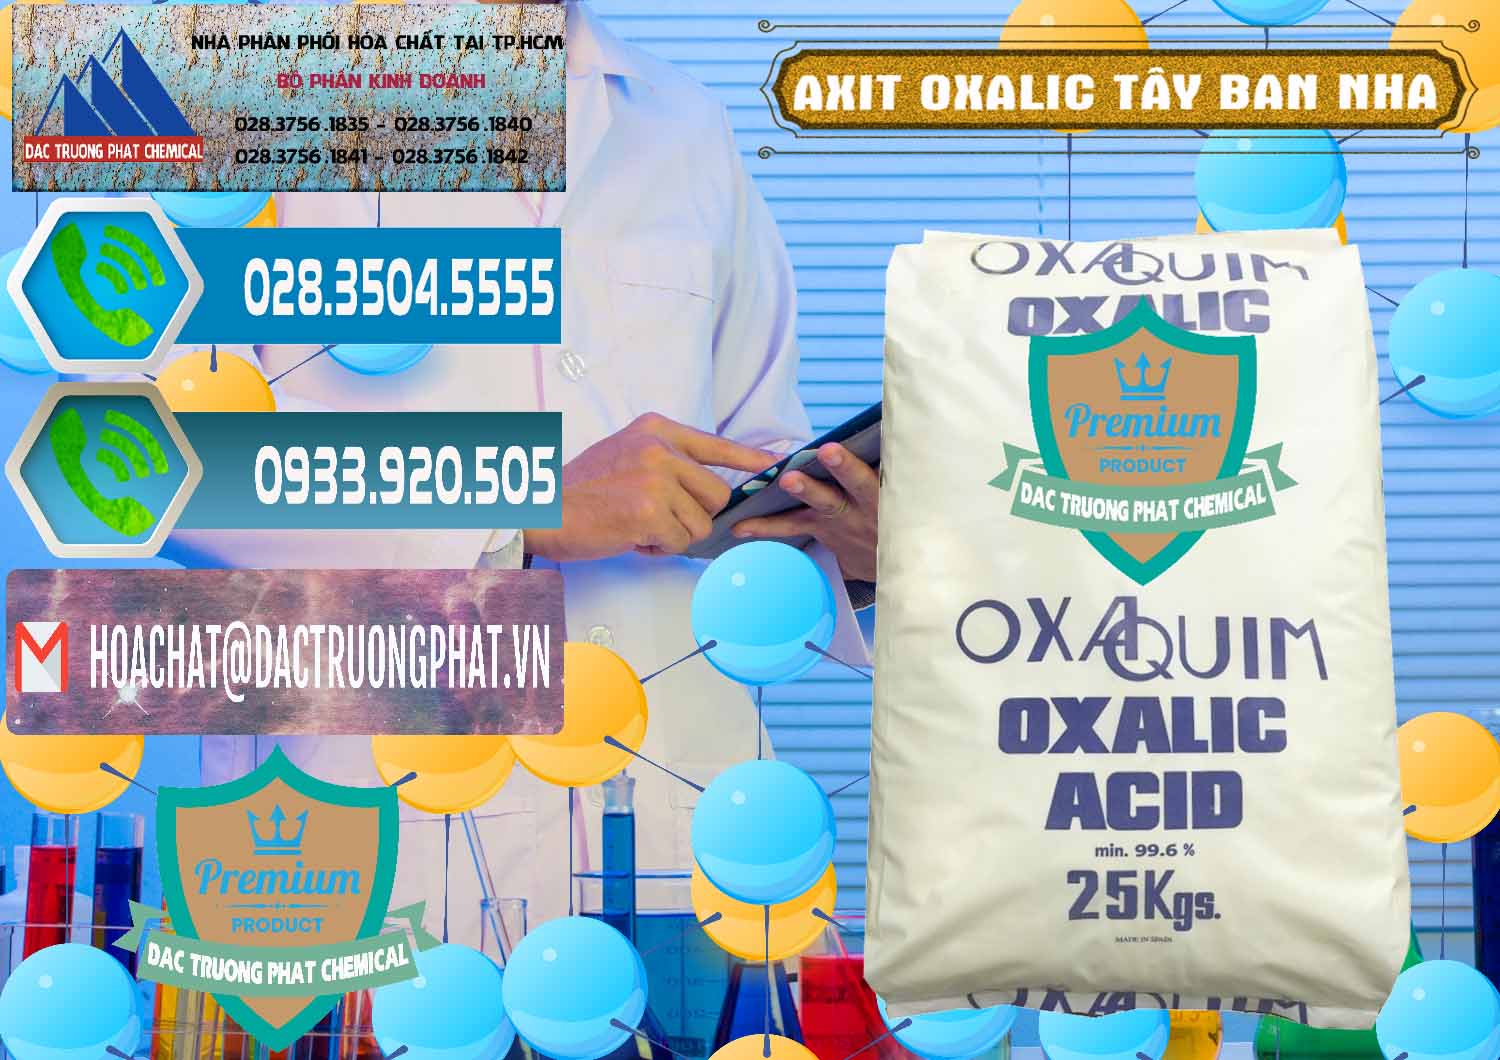 Cty chuyên bán và cung ứng Acid Oxalic – Axit Oxalic 99.6% Tây Ban Nha Spain - 0269 - Cty cung cấp ( nhập khẩu ) hóa chất tại TP.HCM - congtyhoachat.net